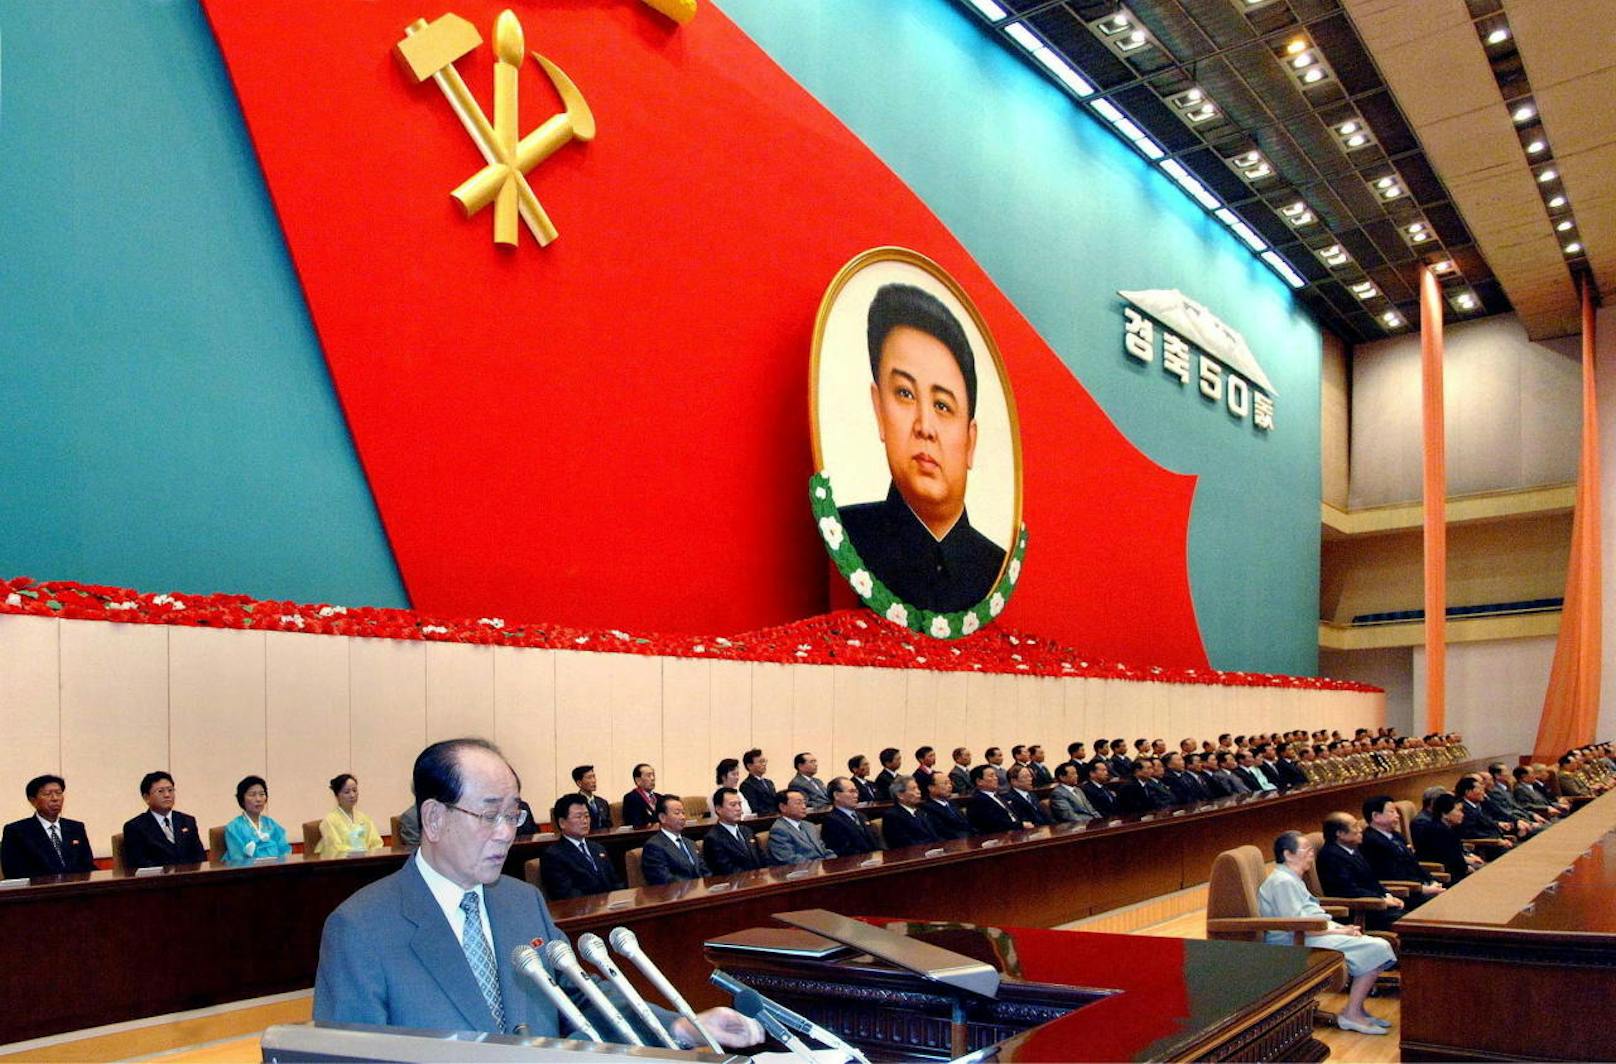 Kim Yong-nam ist der einzige hochrangige Funktionär, gegen den bislang keine UNO-Sanktionen verhängt wurden. Im Bild: Während einer Ansprache zum 50. Jubiläum der Machtergreifung Kim Jong-ils.